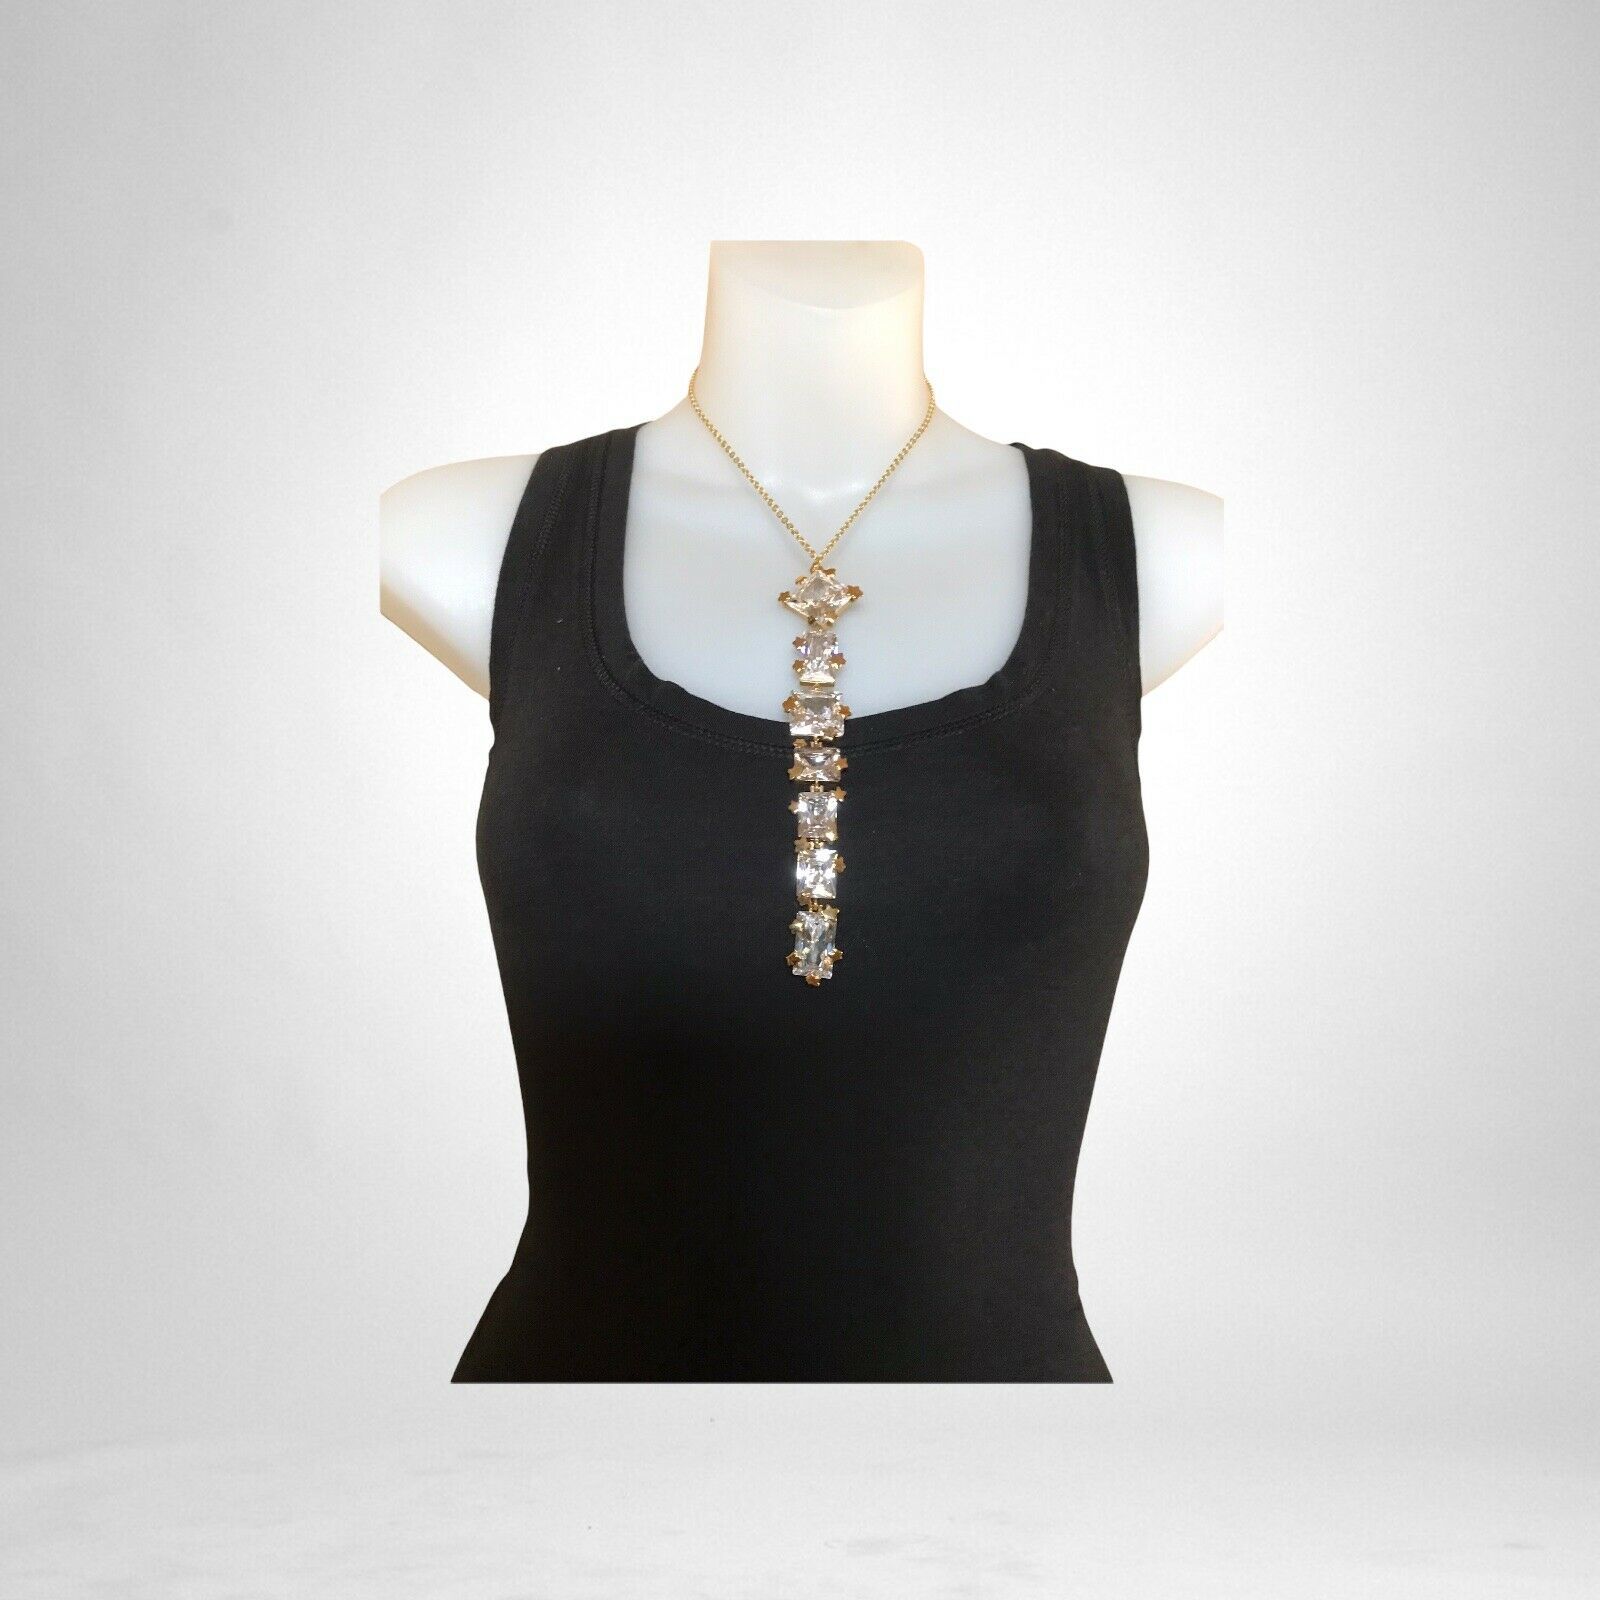 Paula Abdul Simulated Diamond Necklace - $158.40